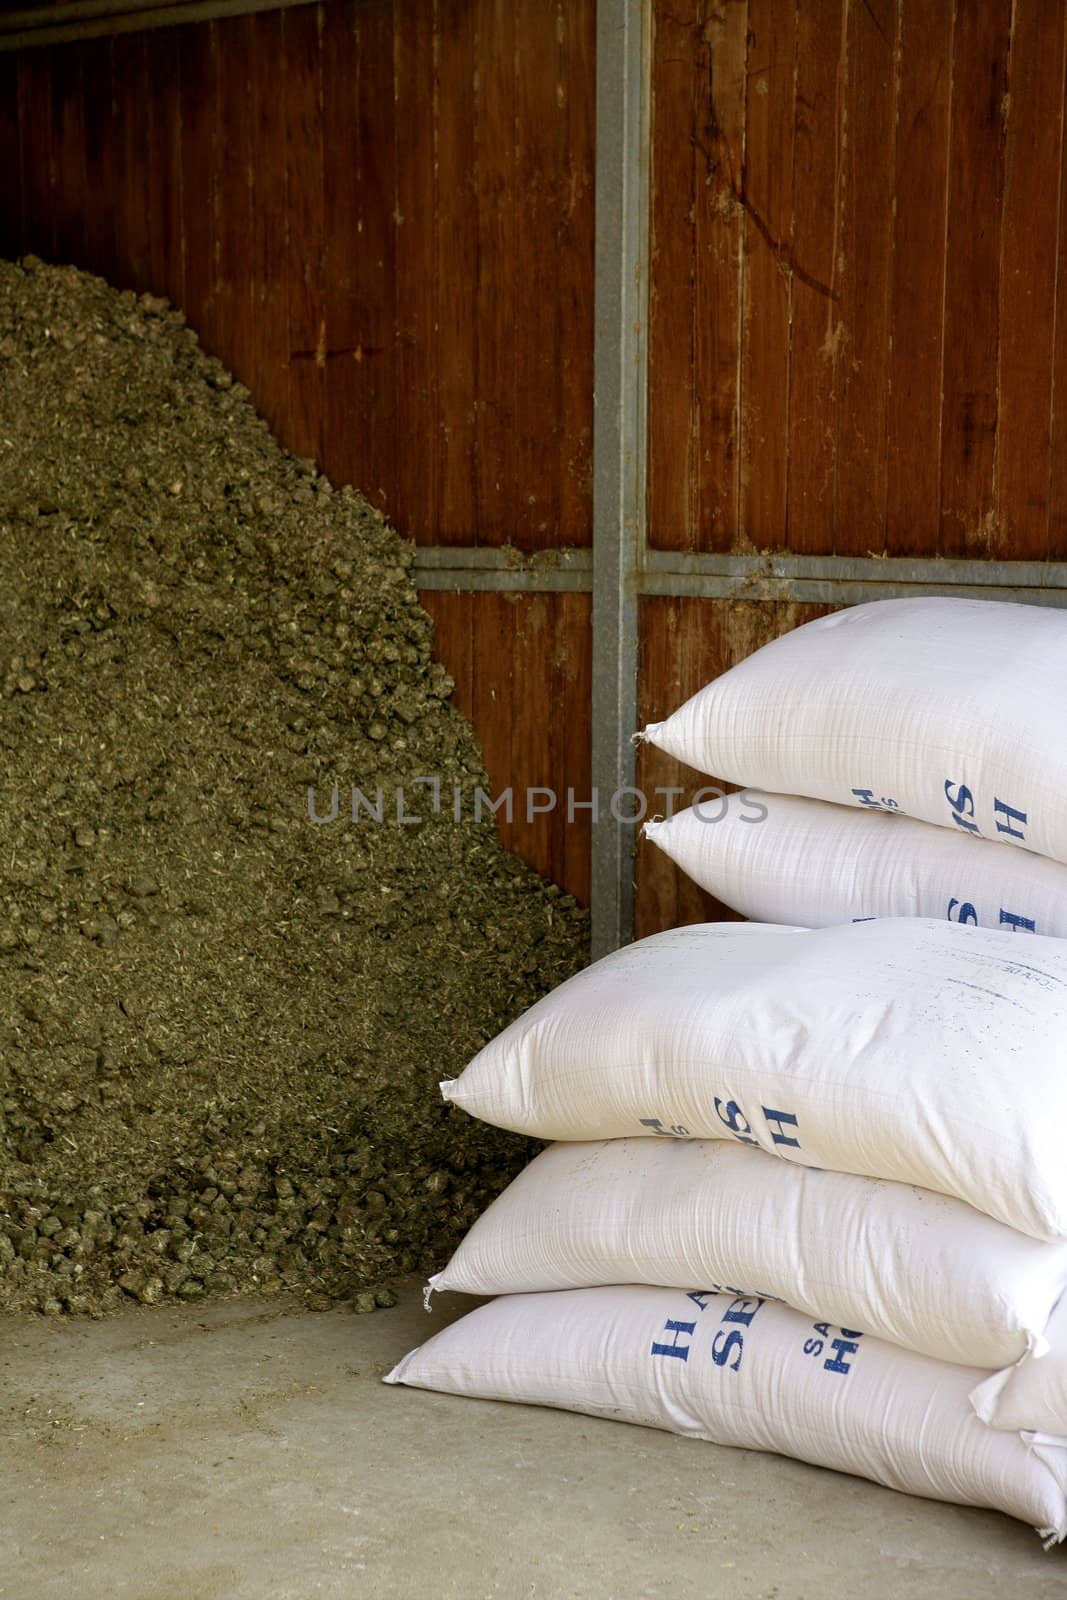 Dry alfalfa texture background , horses food, granary, barn. by lunamarina